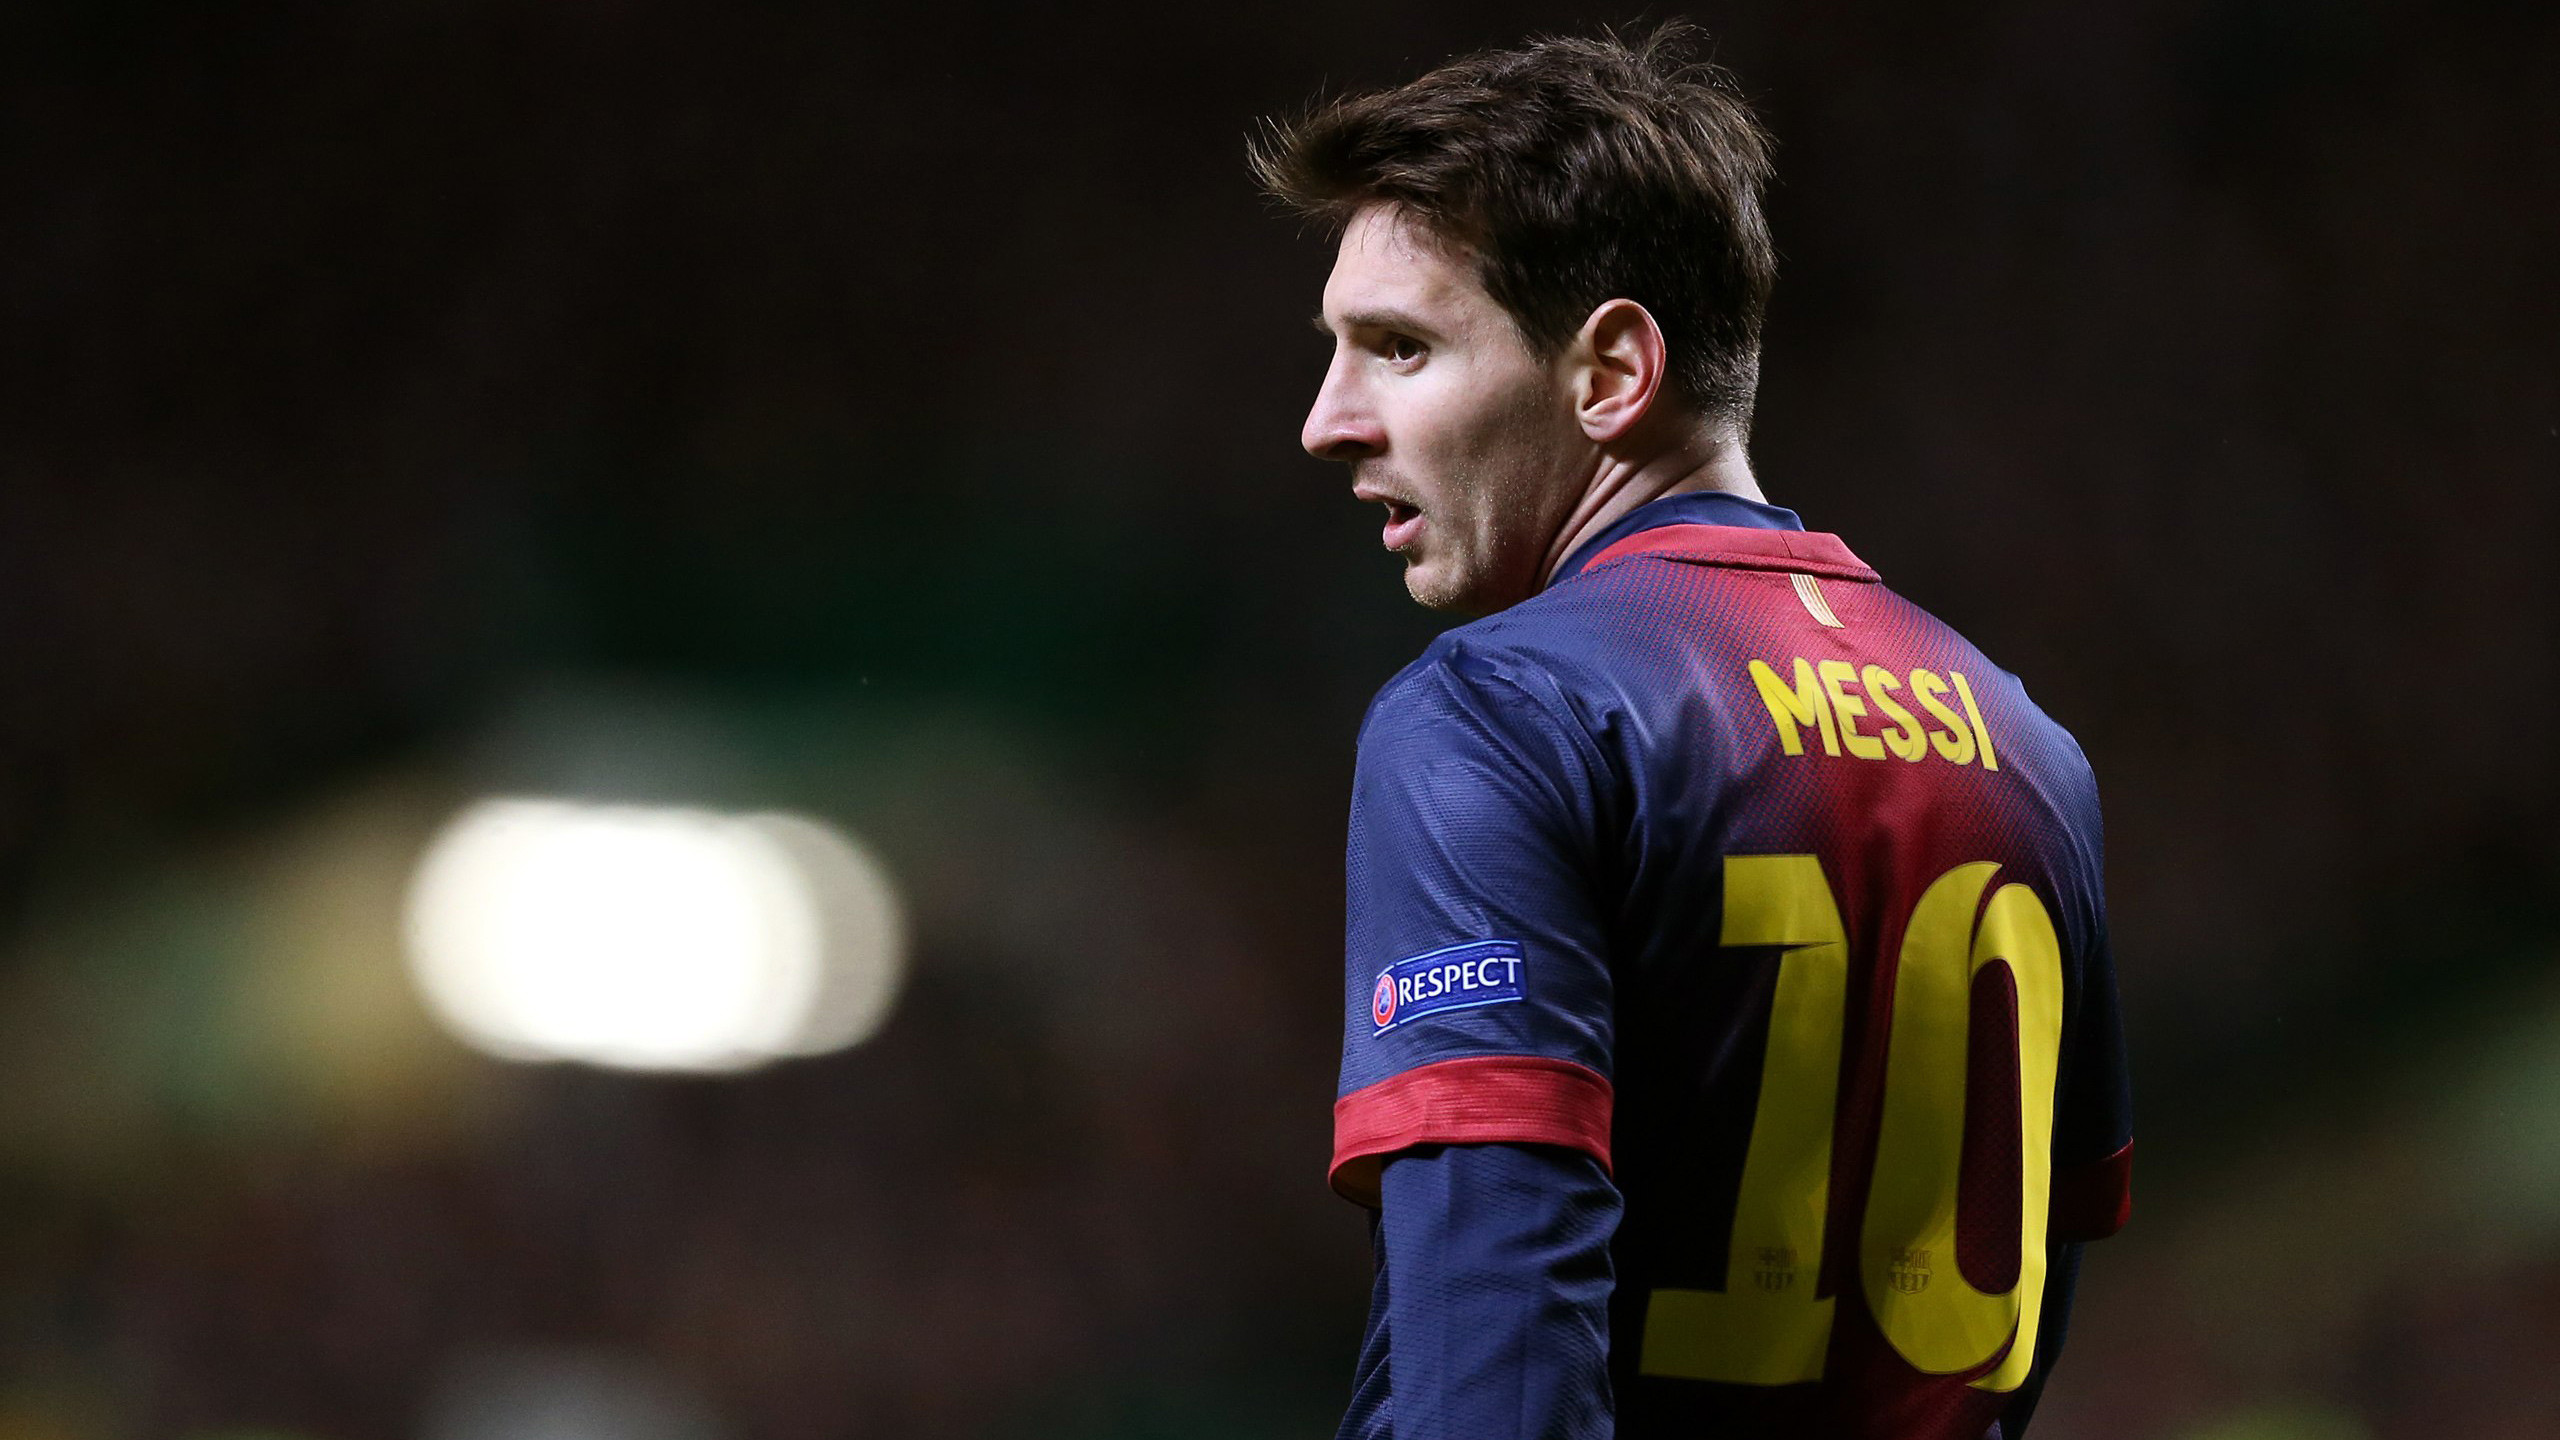 2560x1440 Sports / Lionel Messi Wallpaper. Lionel Messi, FC Barcelona ...